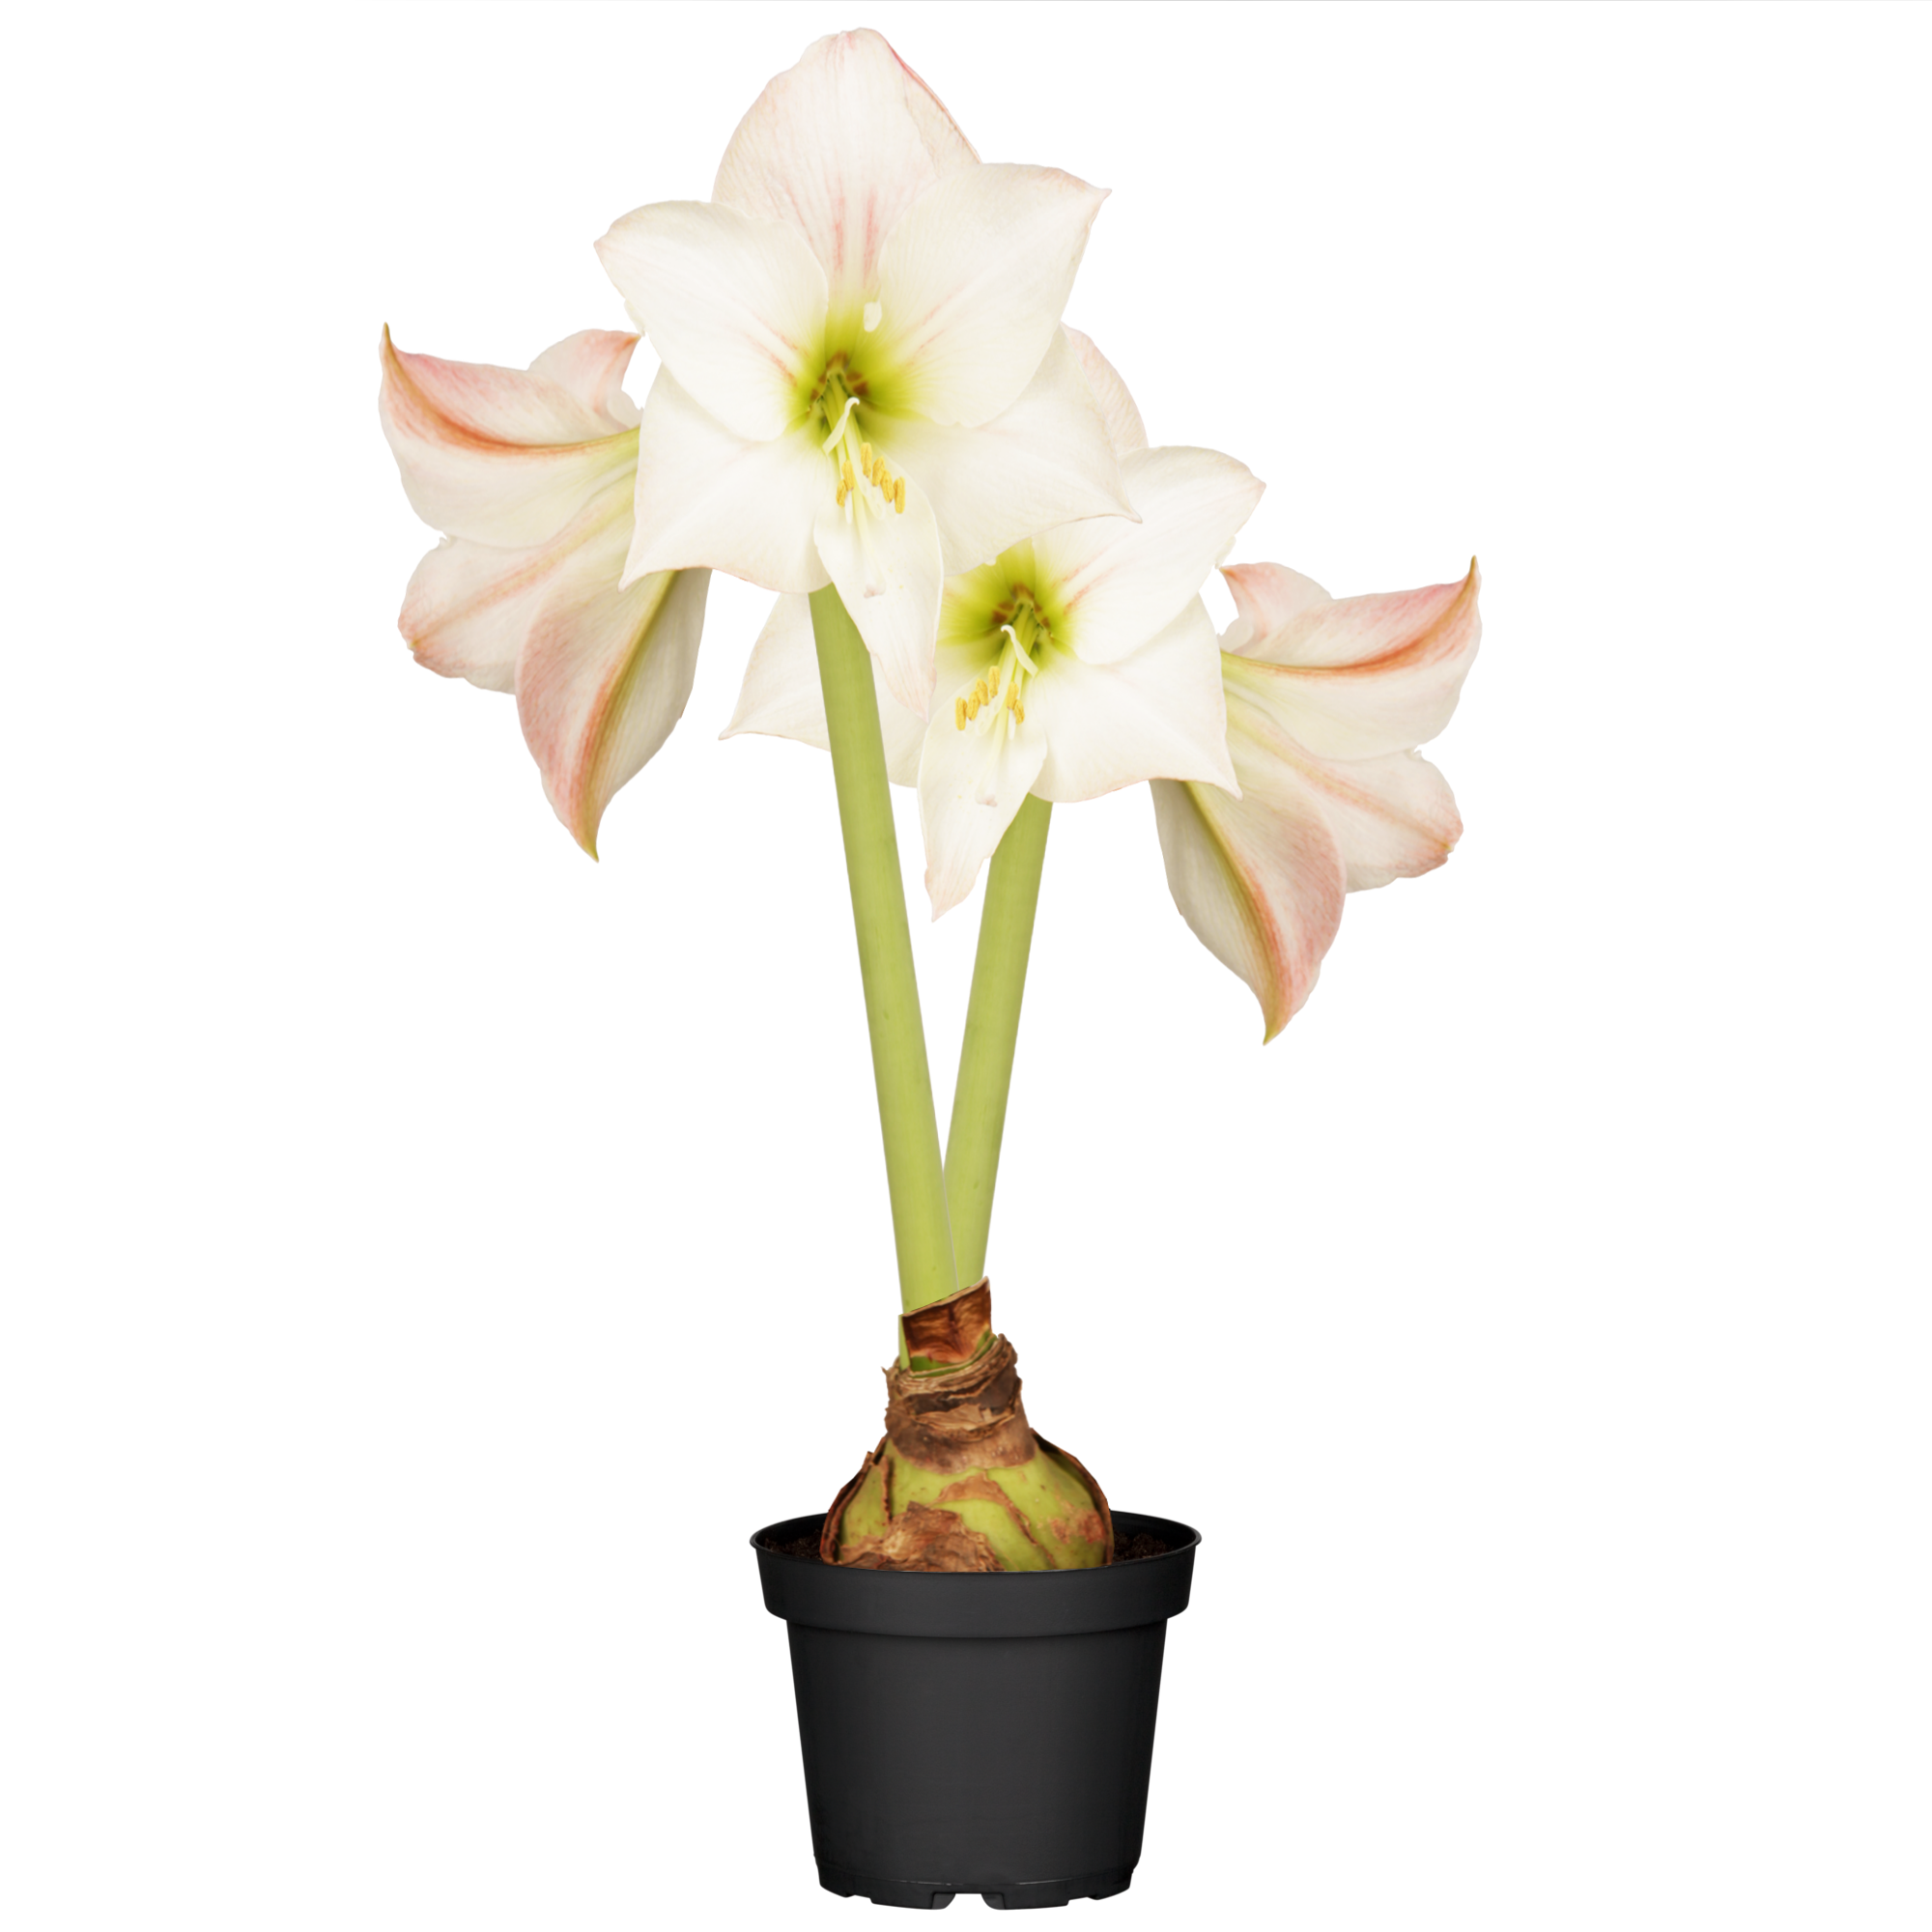 Amaryllis mit 2 Trieben weiß-pink 12 cm Topf + product picture